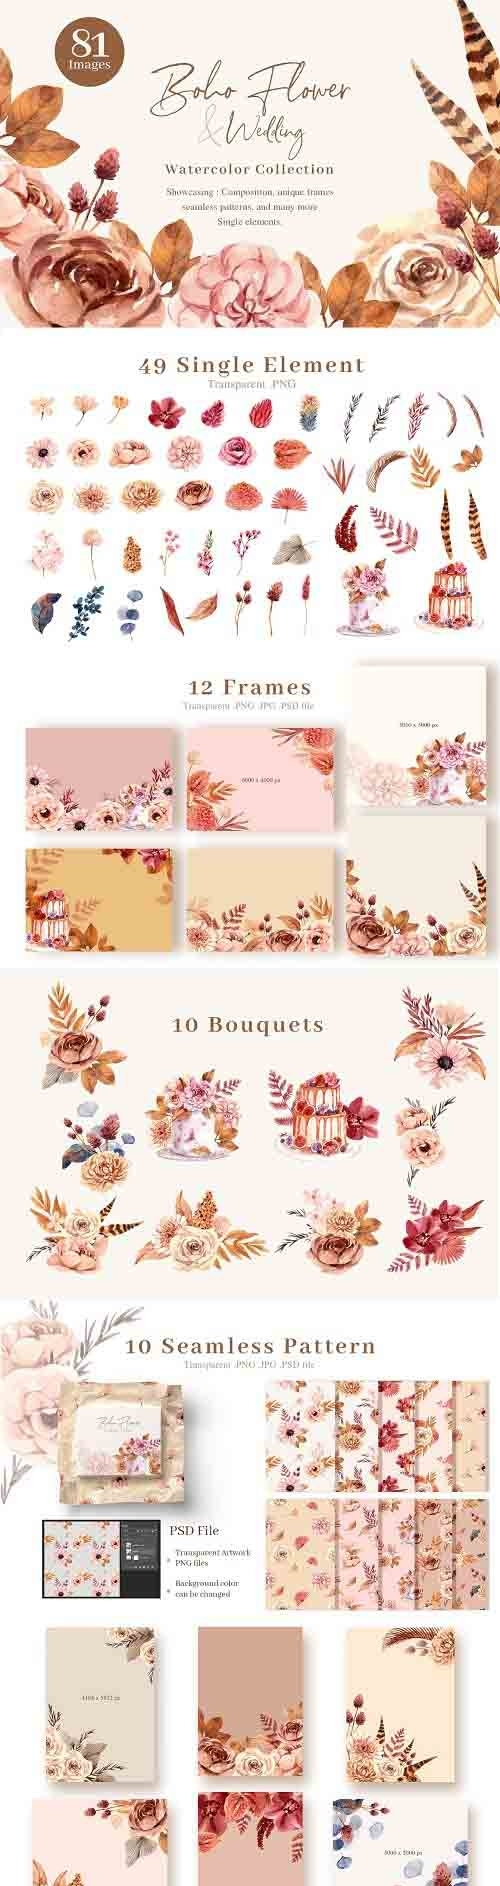 Boho Flowers & Wedding decoration - 5969105